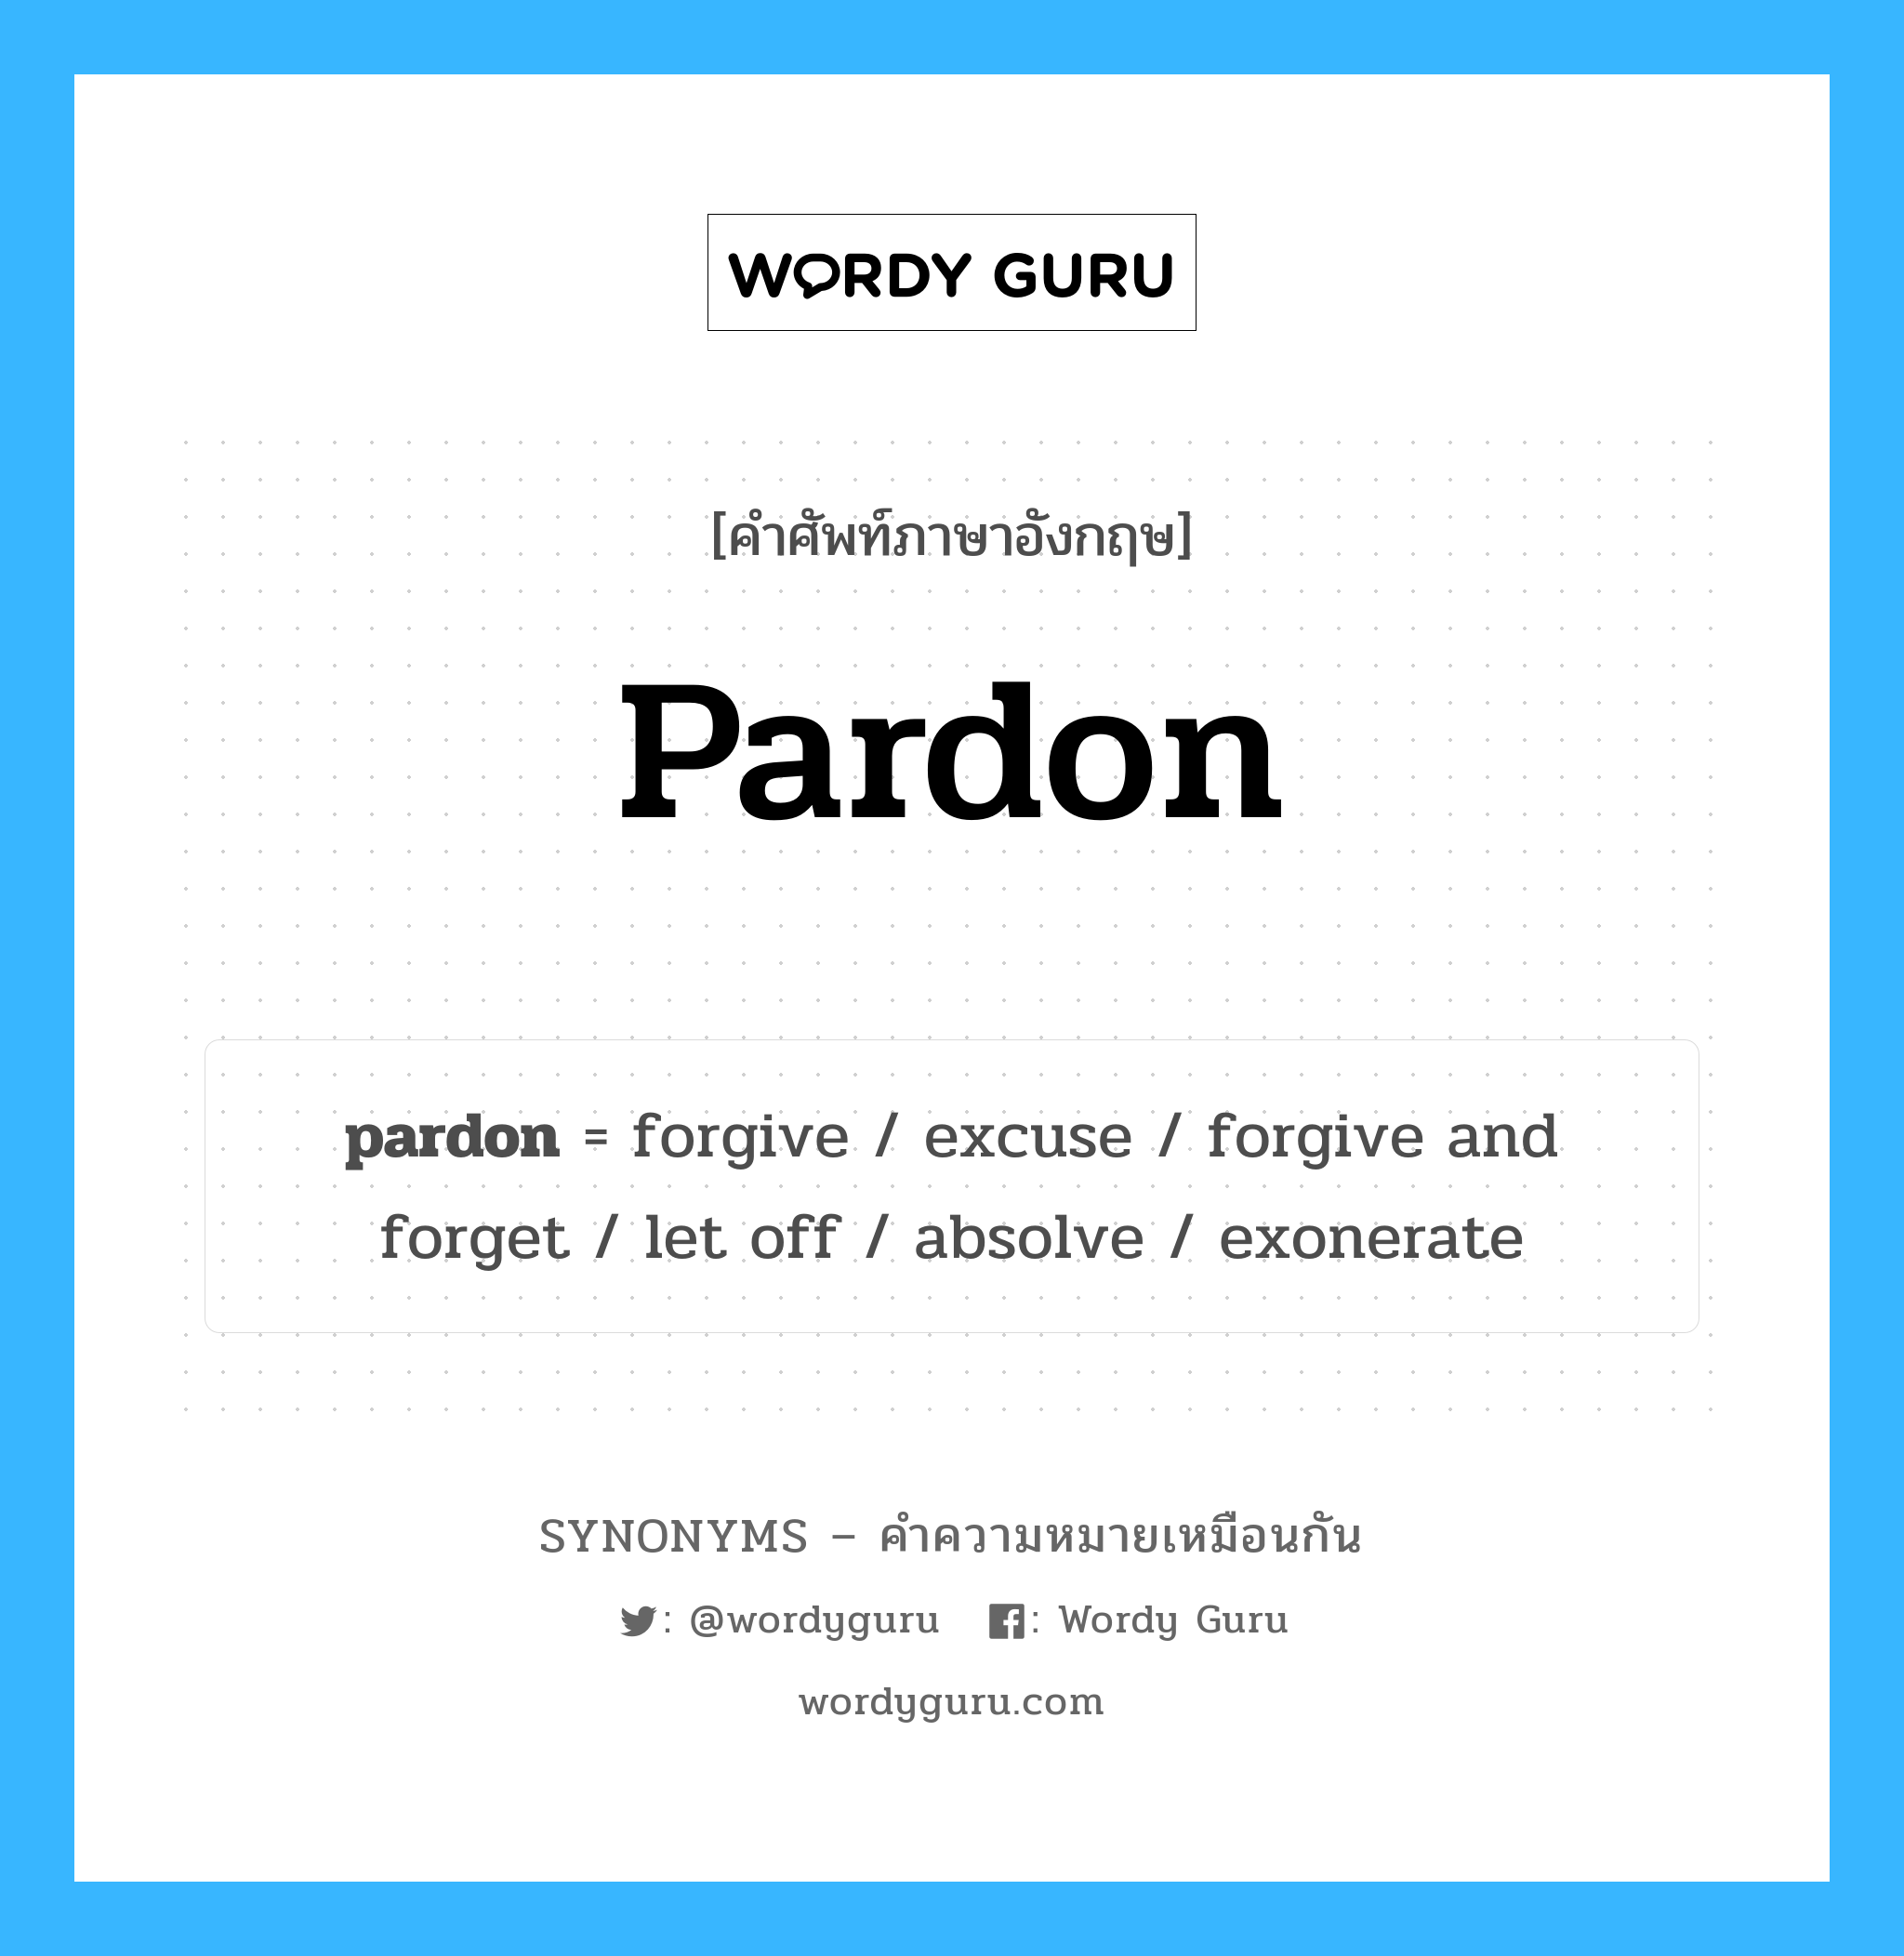 pardon เป็นหนึ่งใน excuse และมีคำอื่น ๆ อีกดังนี้, คำศัพท์ภาษาอังกฤษ pardon ความหมายคล้ายกันกับ excuse แปลว่า ข้อแก้ตัว หมวด excuse